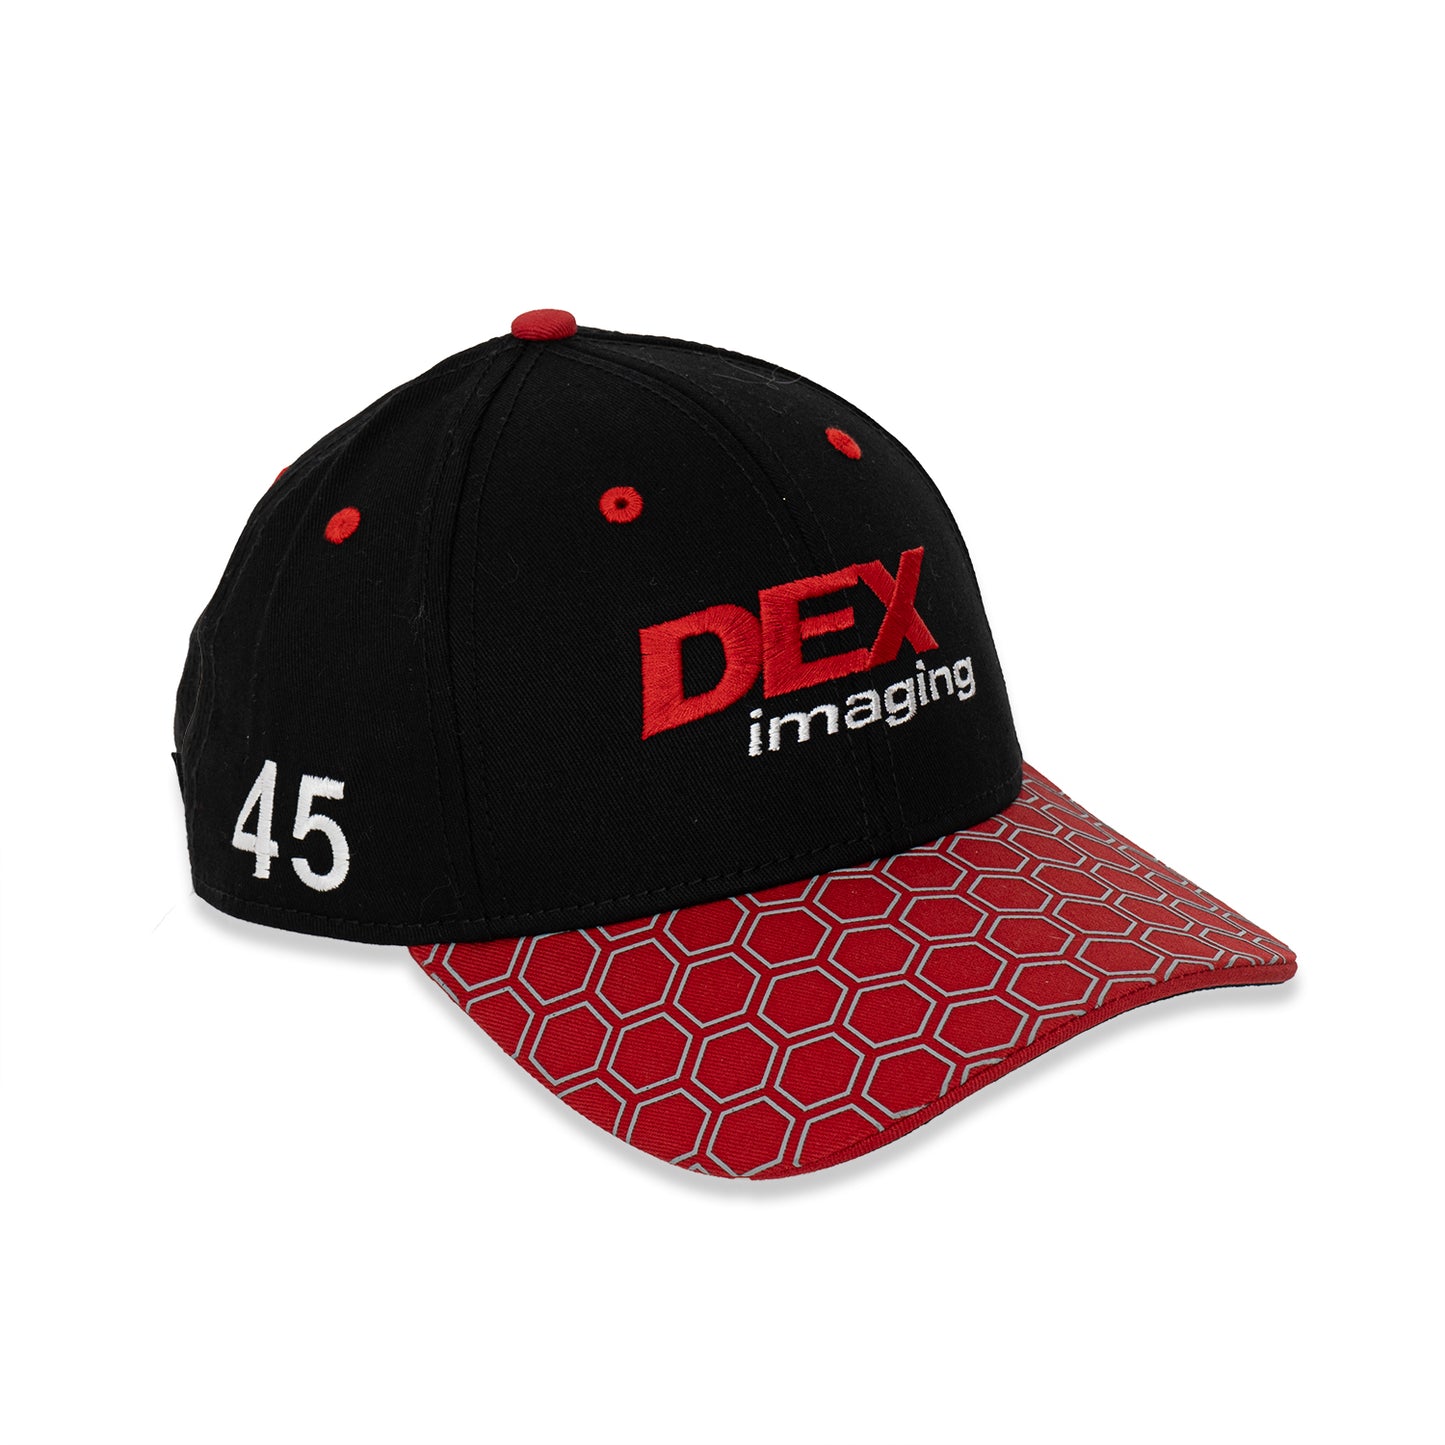 WTR DEX imaging #45 Team Hat - Black/Red